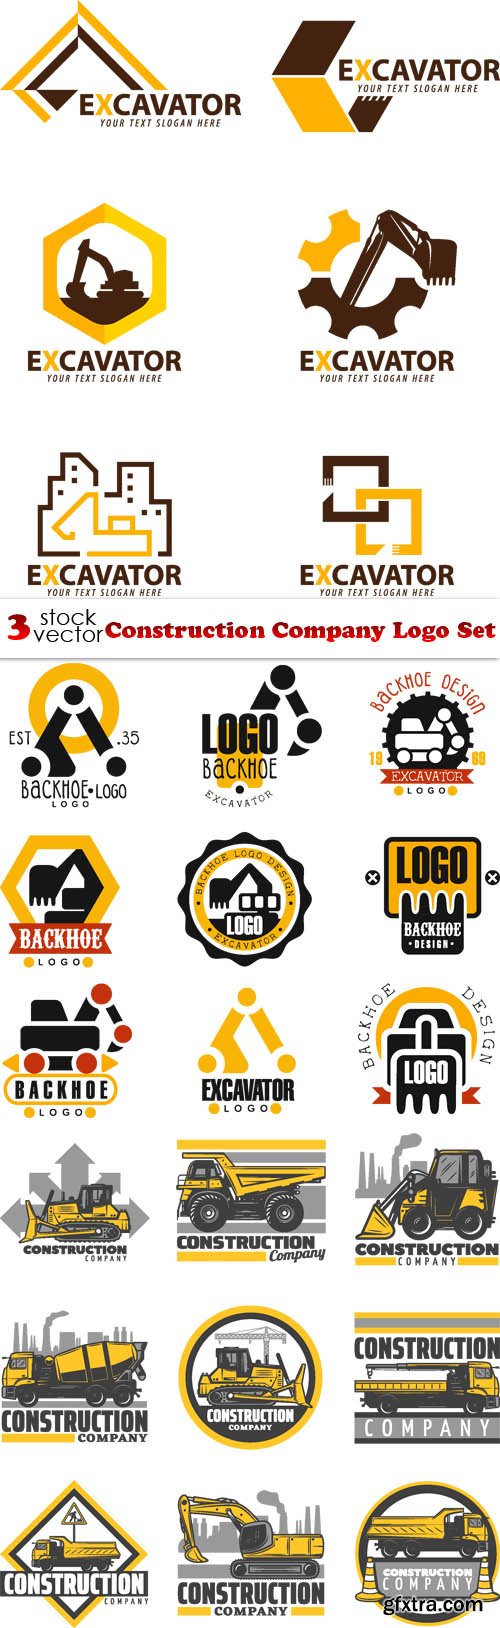 Vectors - Construction Company Logo Set